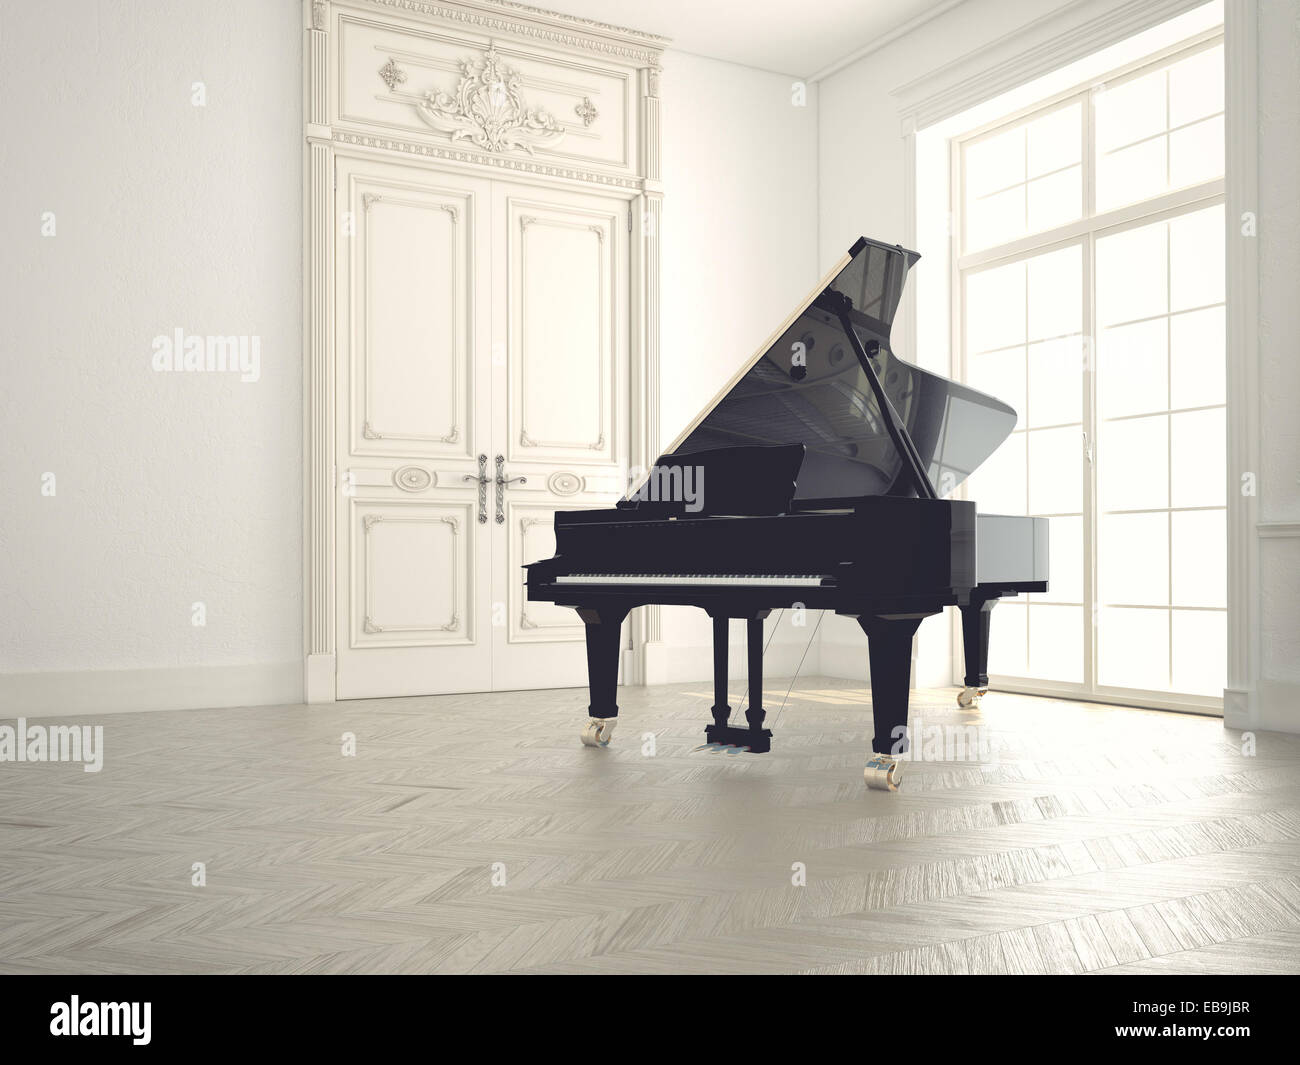 Piano dans une salle vide n.3d rendering Banque D'Images